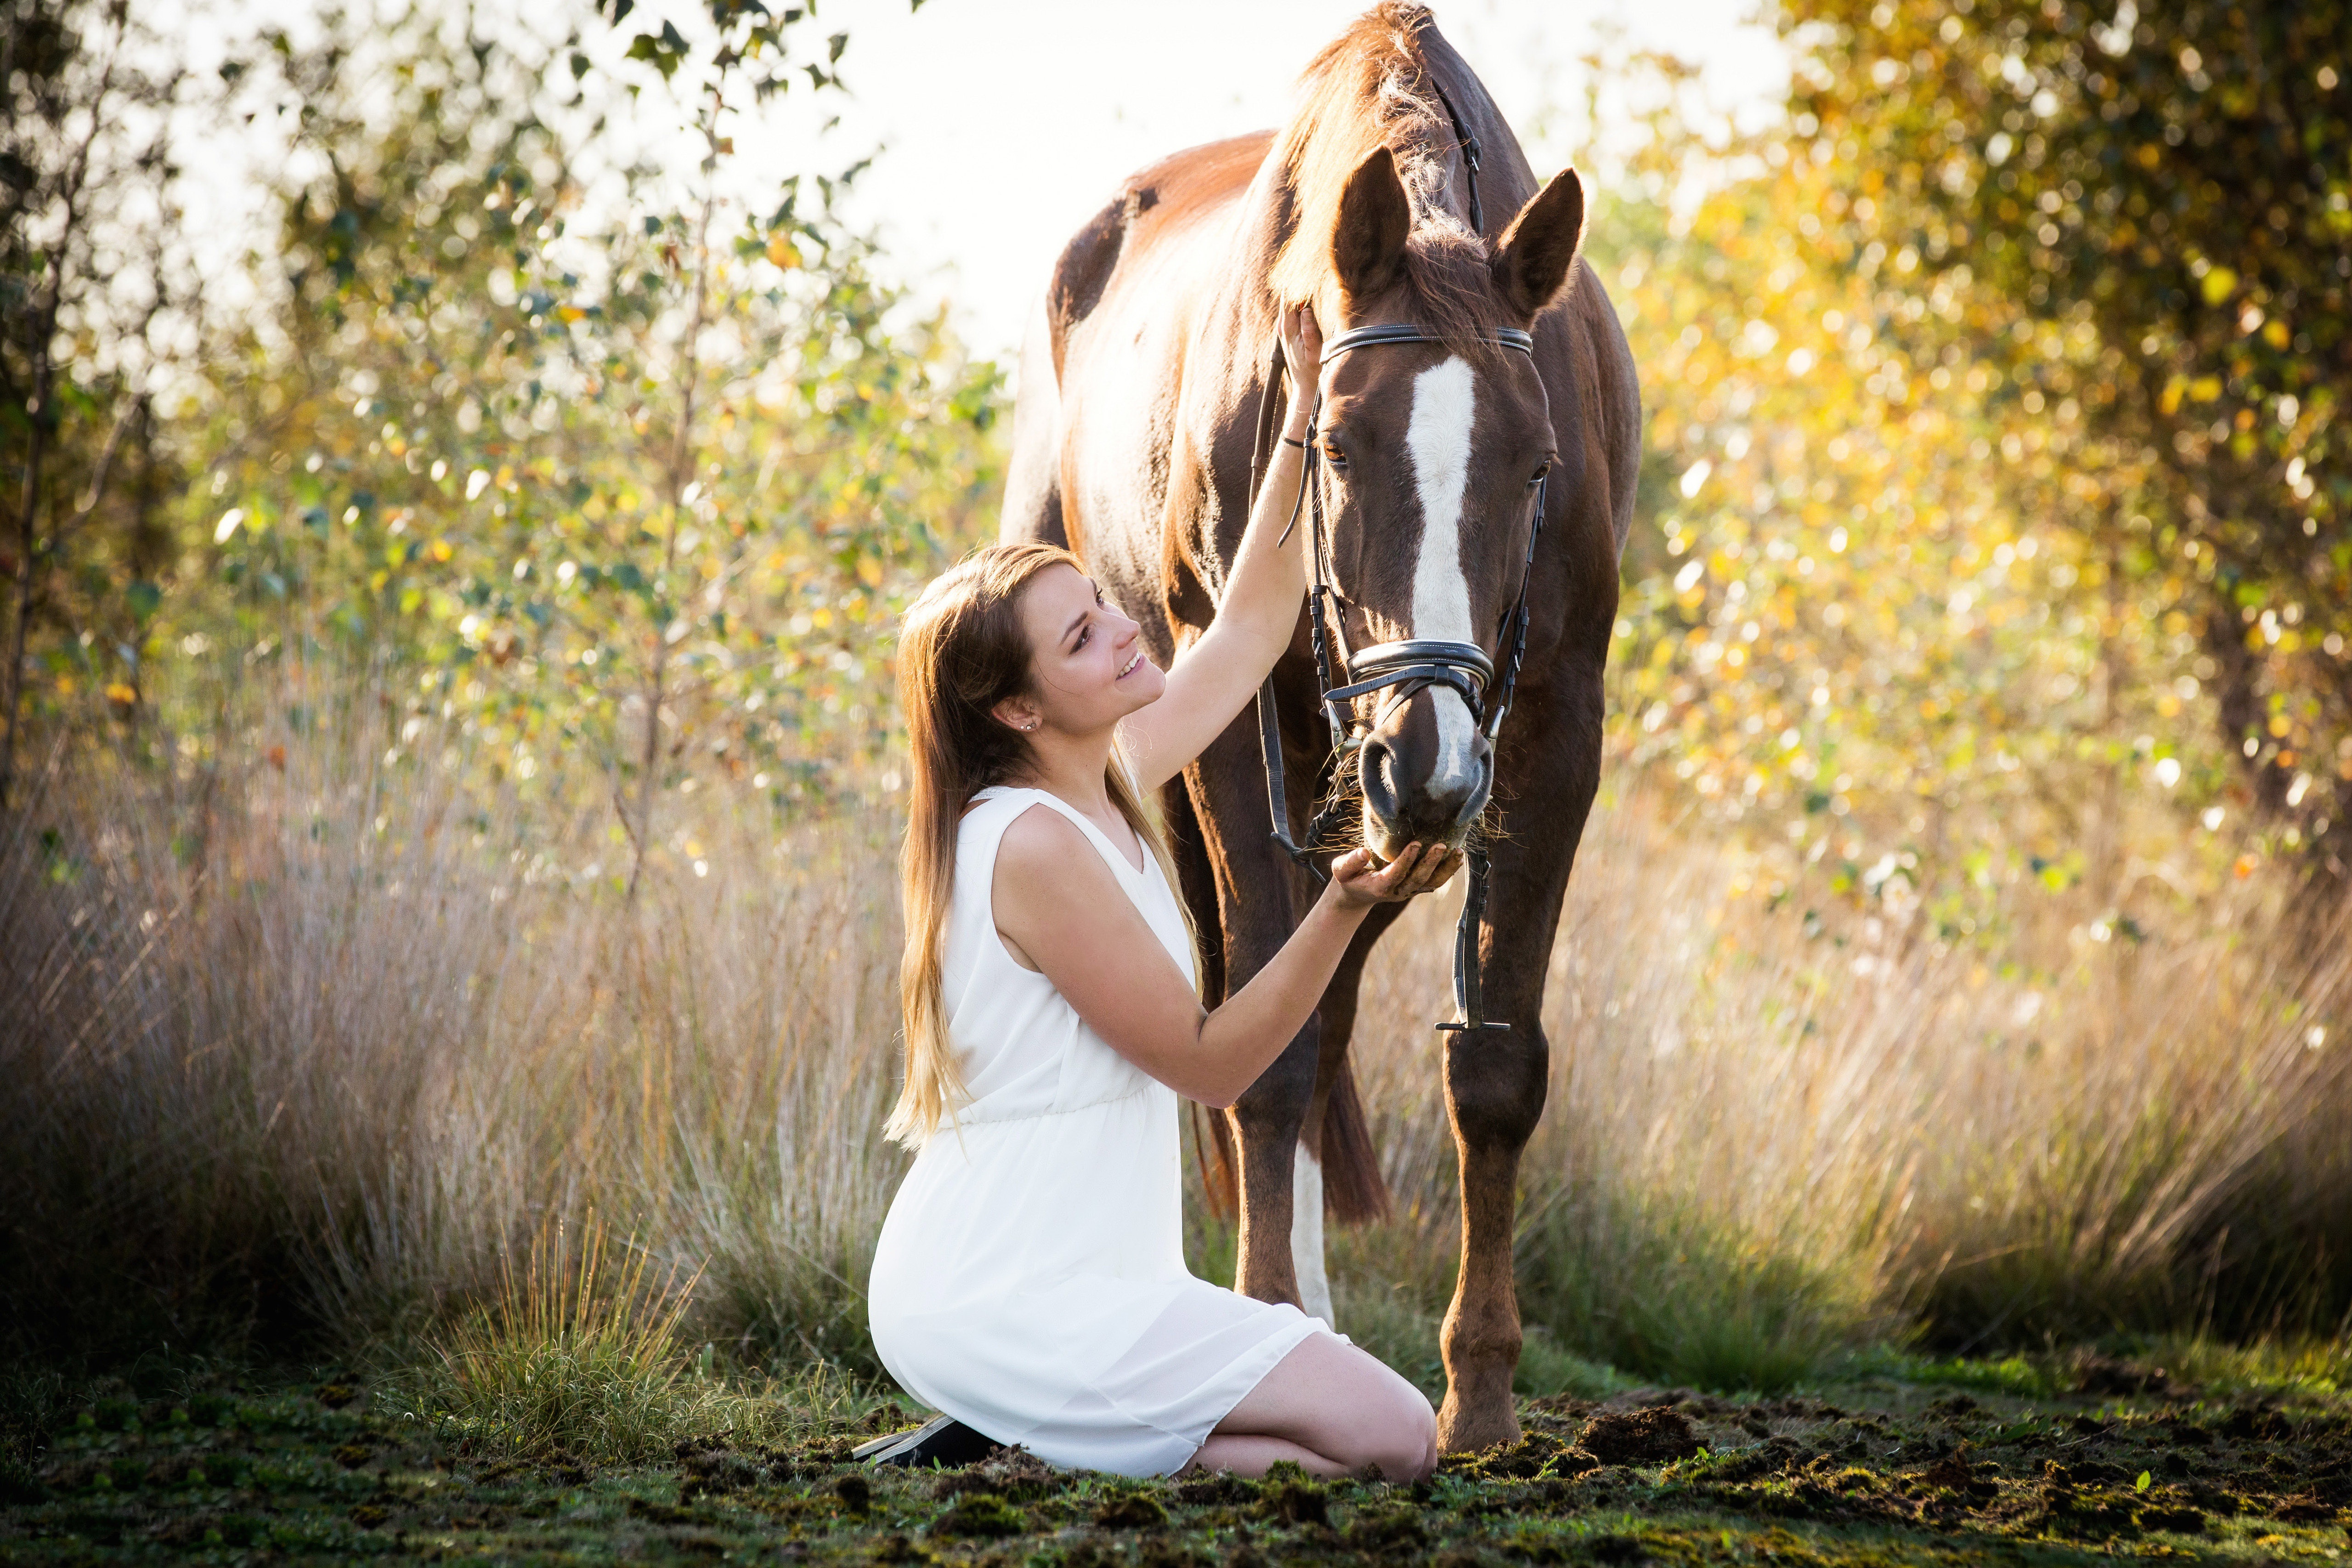 Верховая женщина. Девушка с лошадью. Конь и женщина. Девушка верхом на лошади. Лошади на природе.